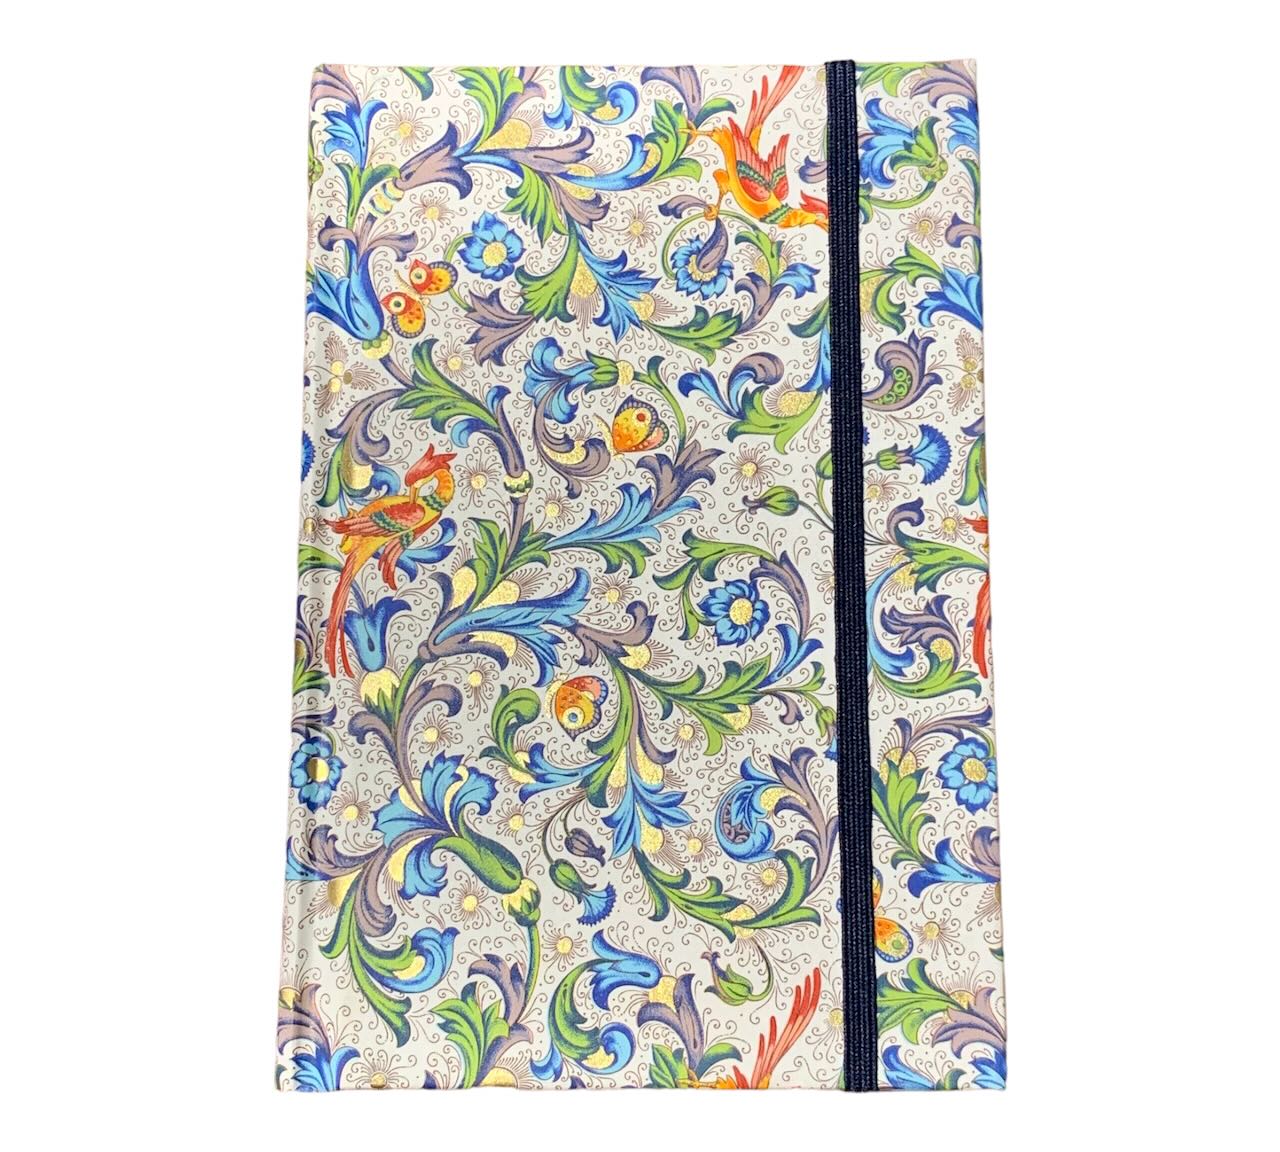 Vintage Notizbuch 10x15cm in florentinischem Papier gebunden Blumenmotiv blau